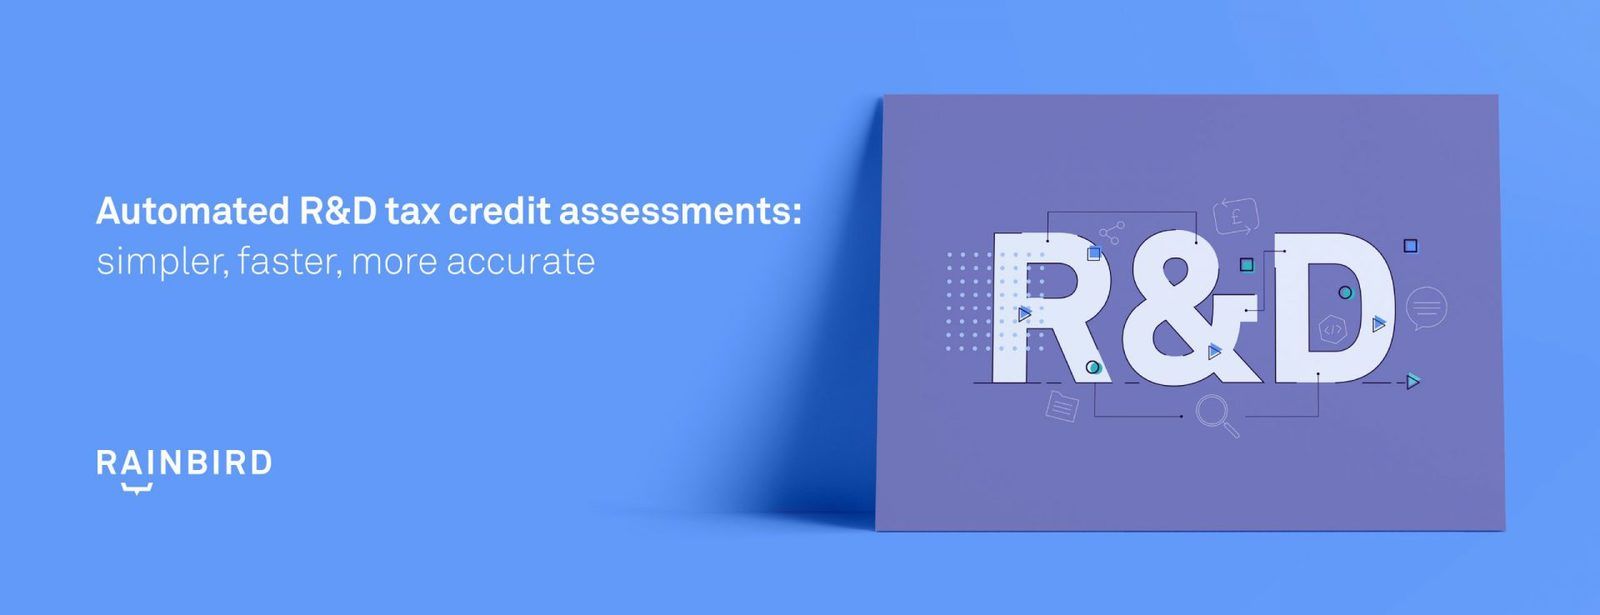 automated-r-d-tax-credit-assessments-ebook-rainbird